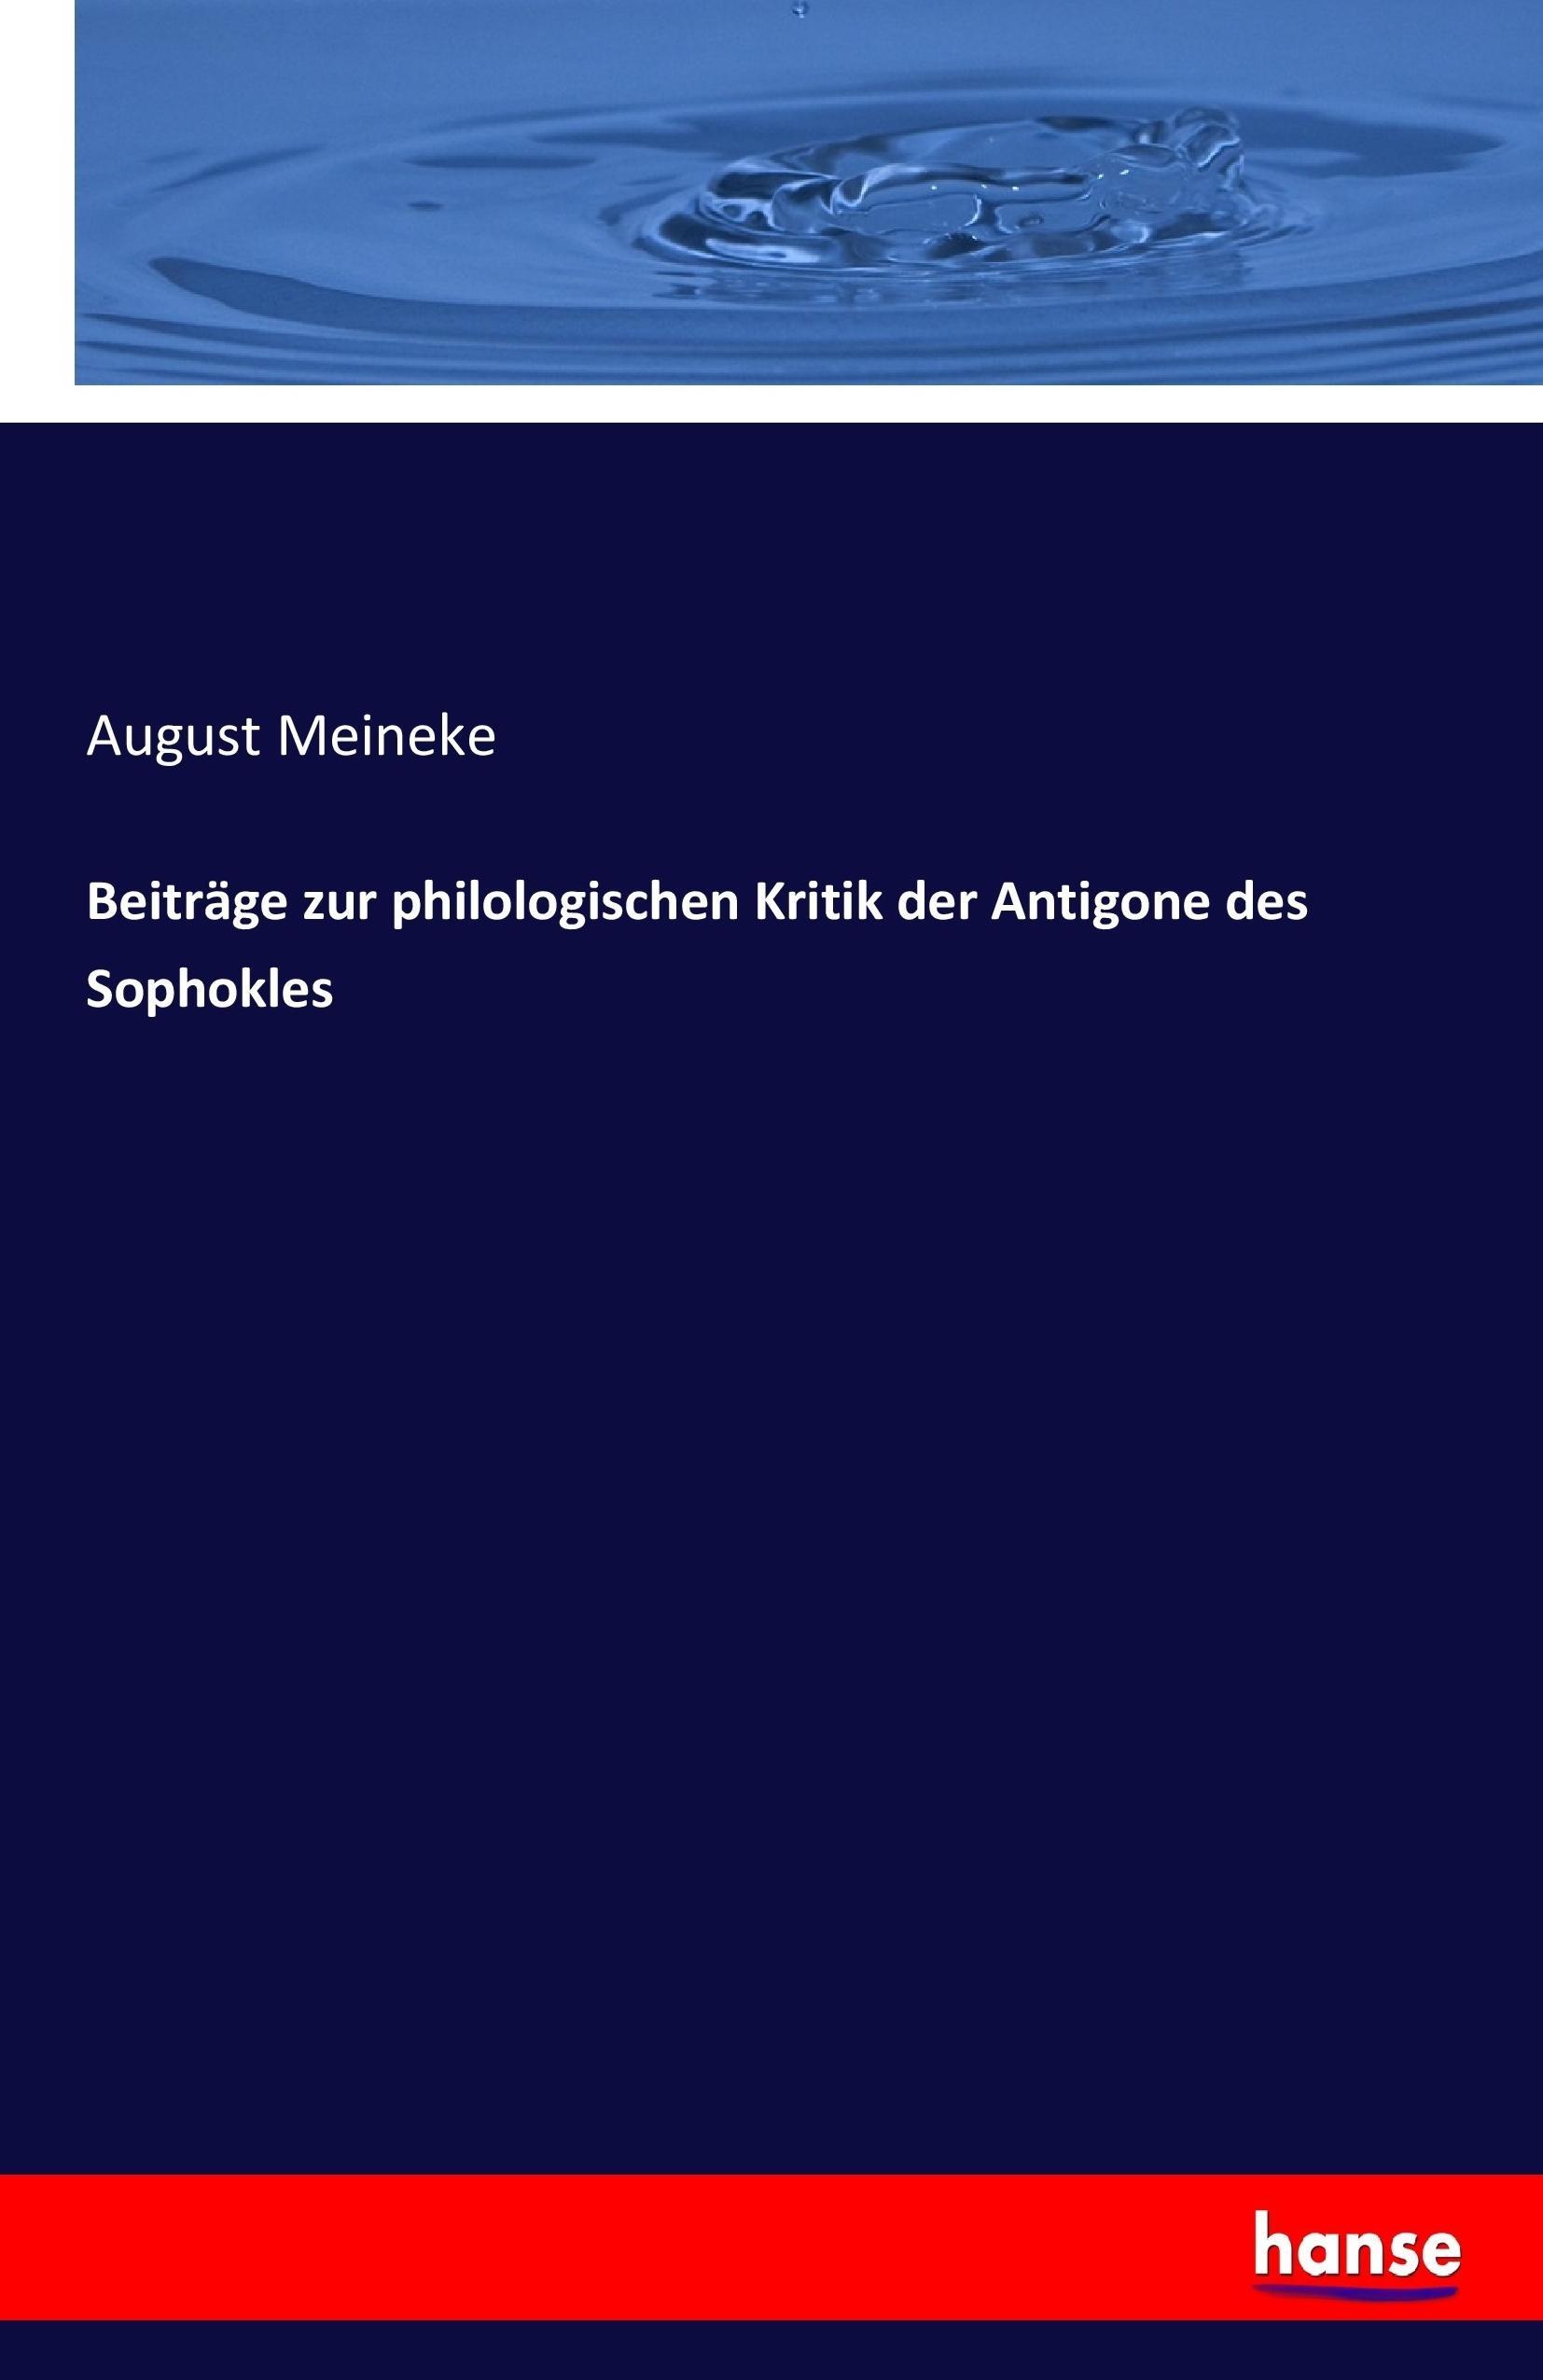 Beitraege zur philologischen Kritik der Antigone des Sophokles - Meineke, August